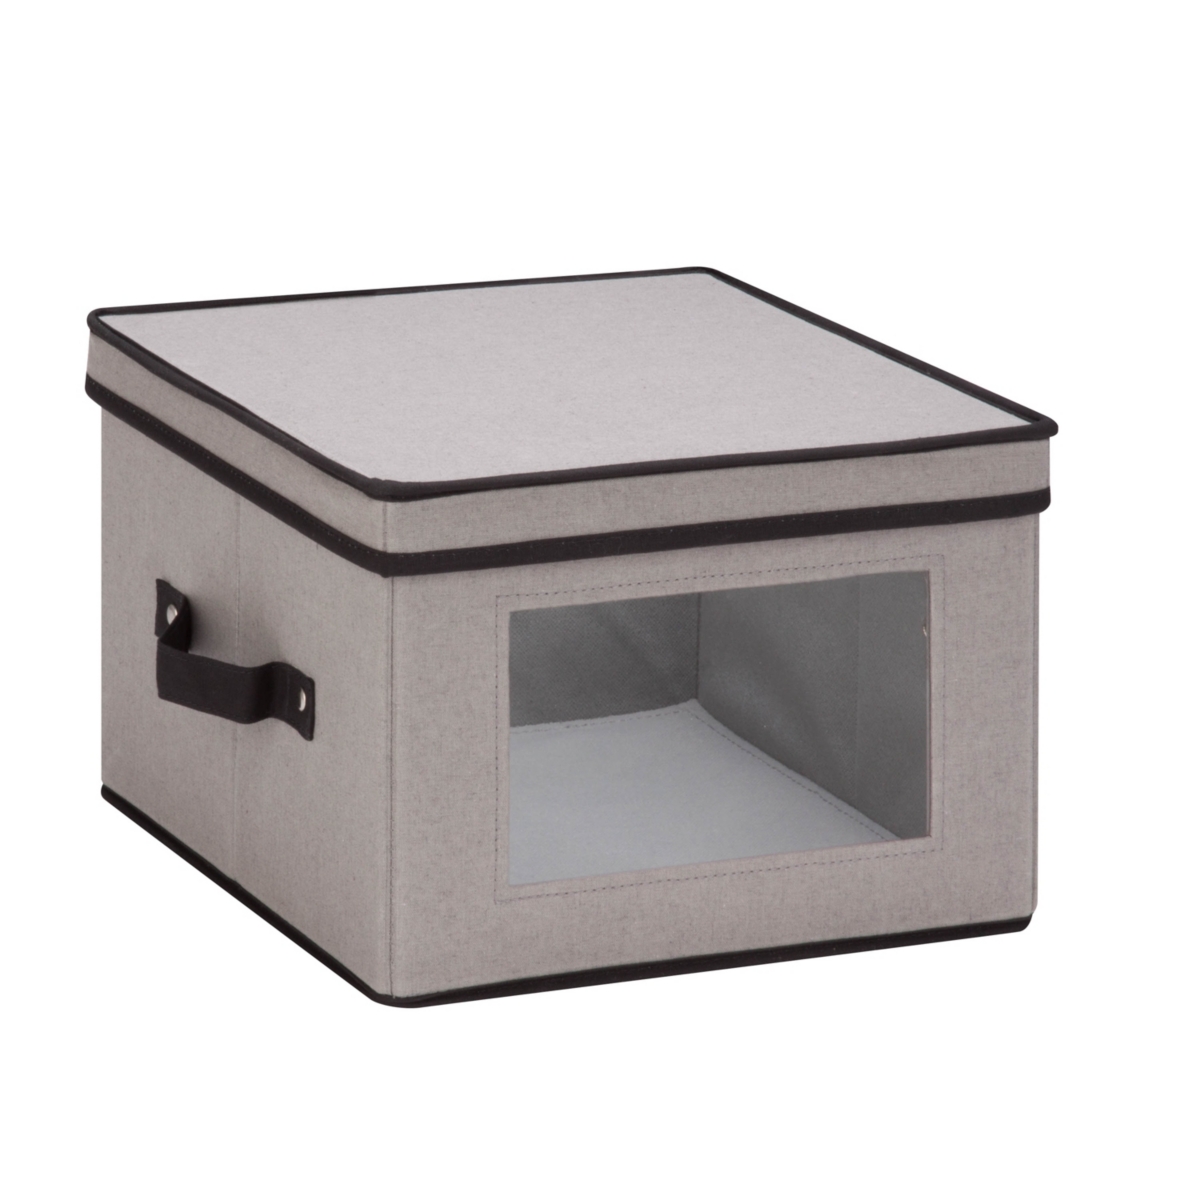 12" x 12" Window Storage Box, Gray - Gray